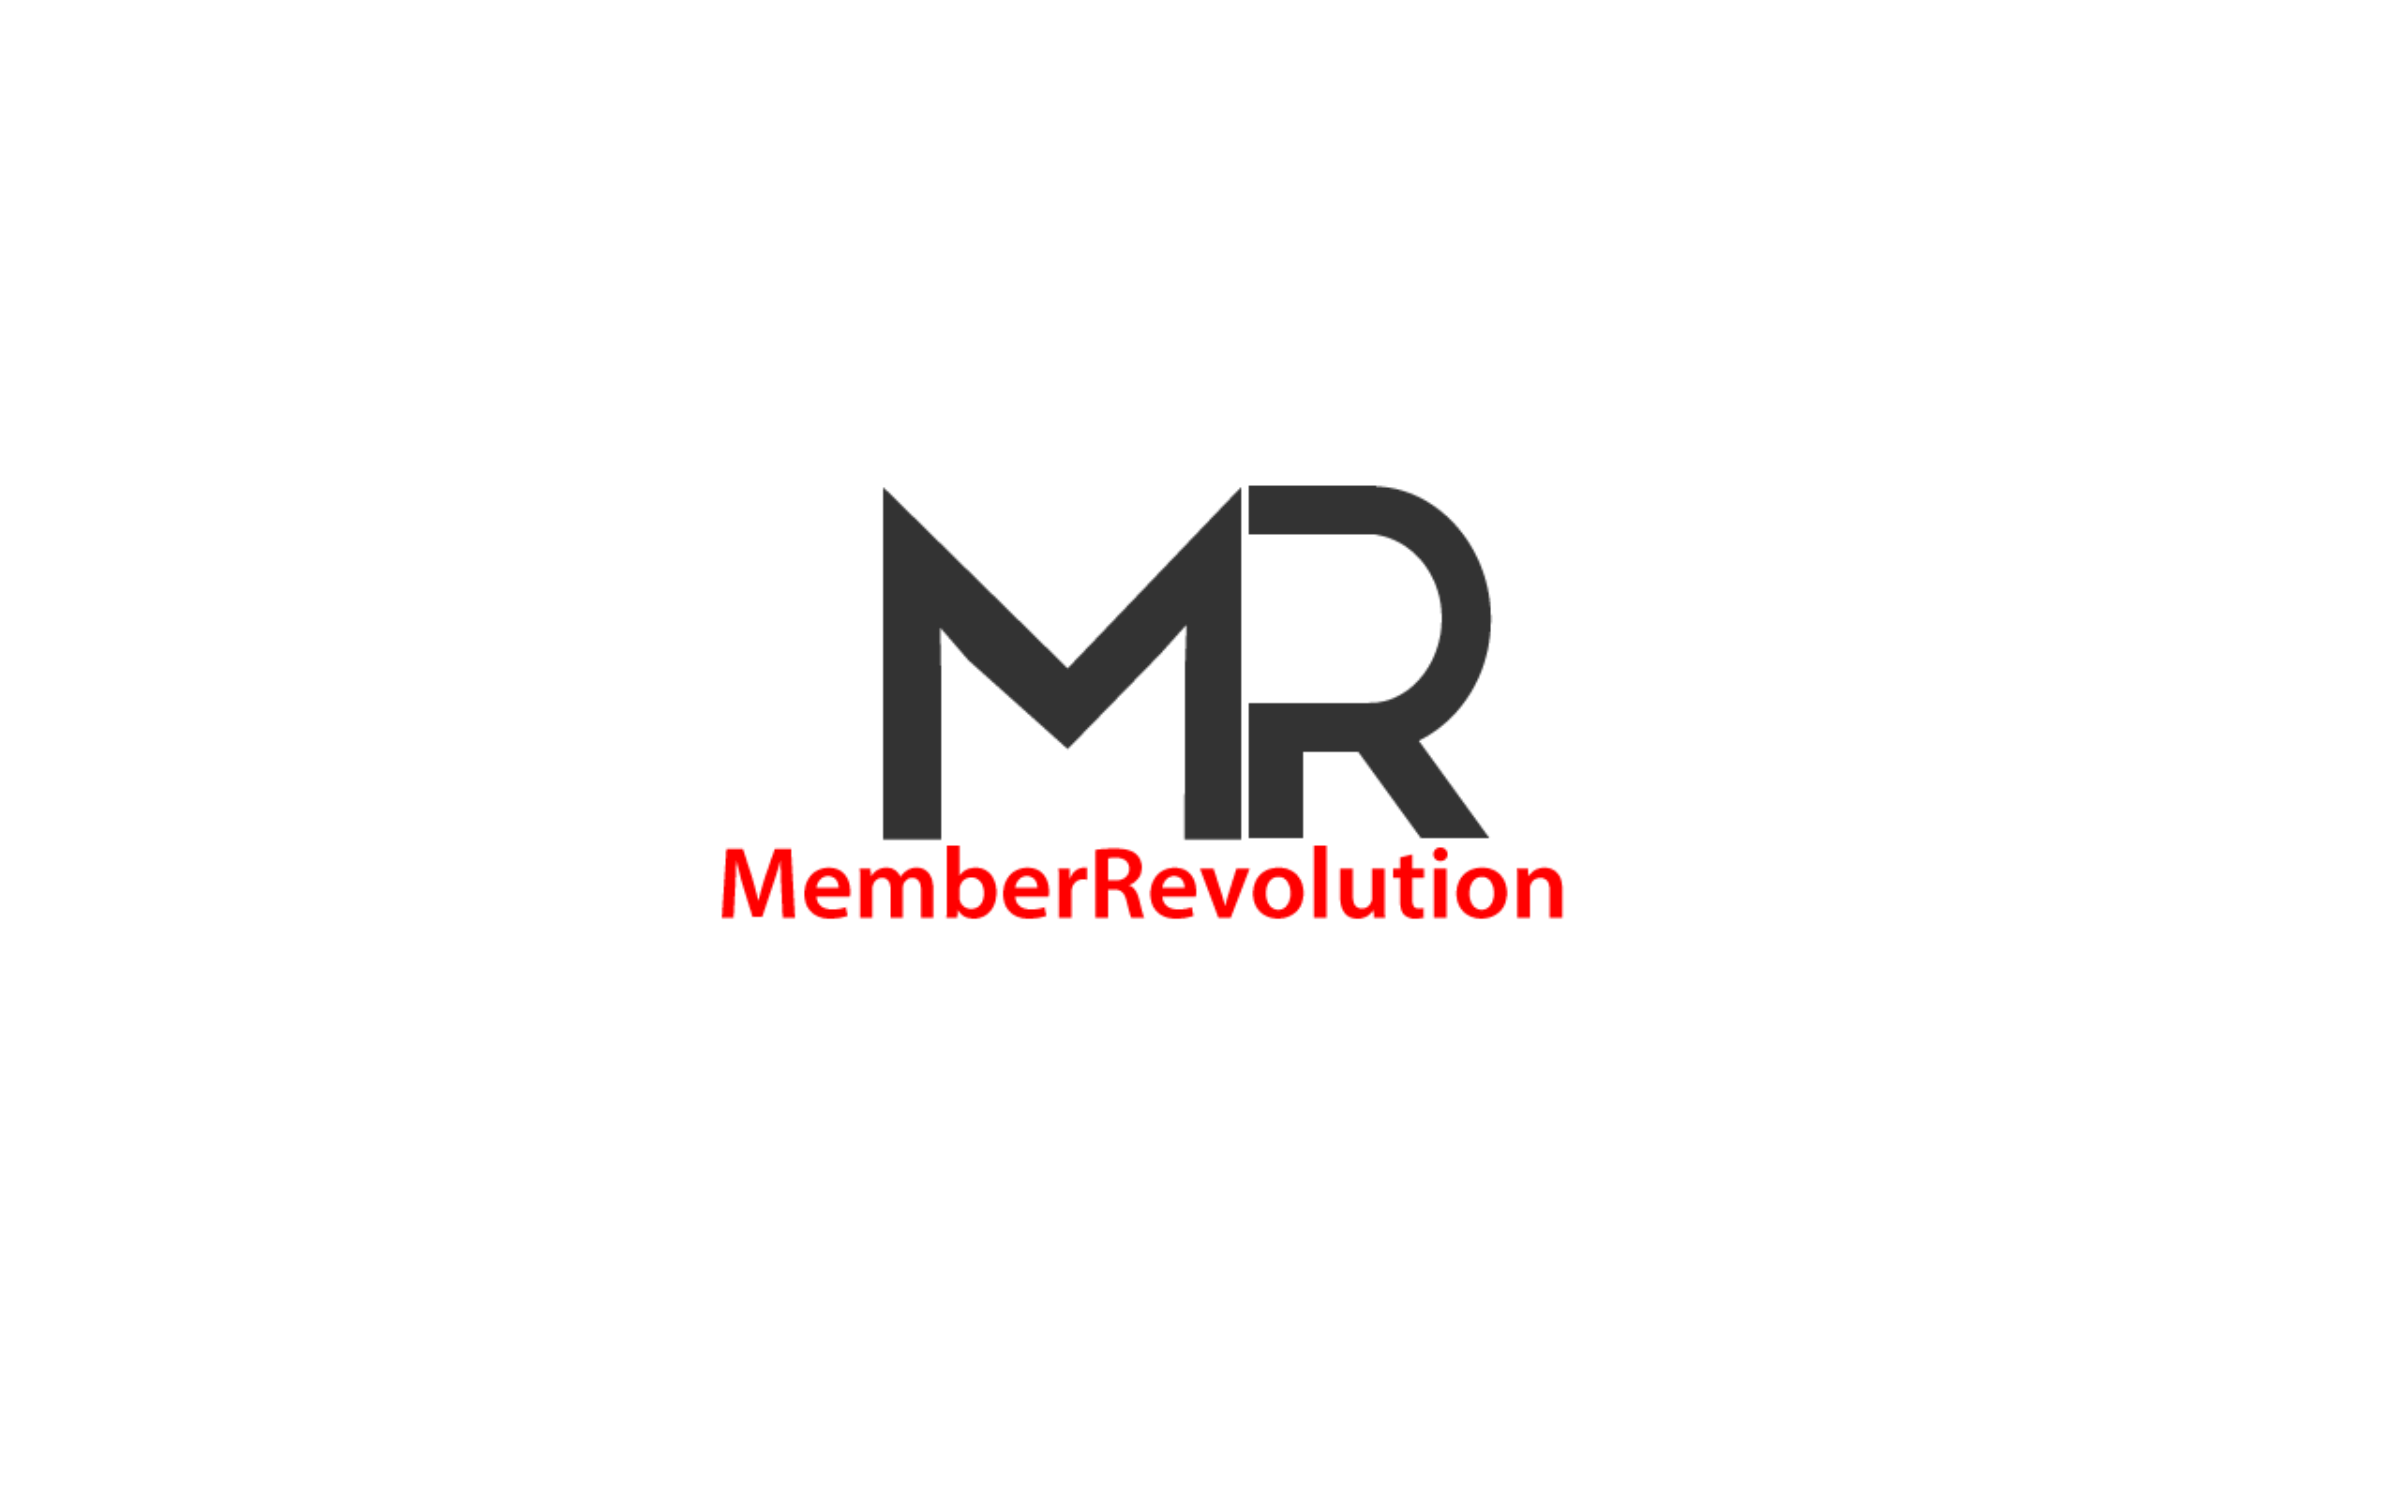 MemberRevolution